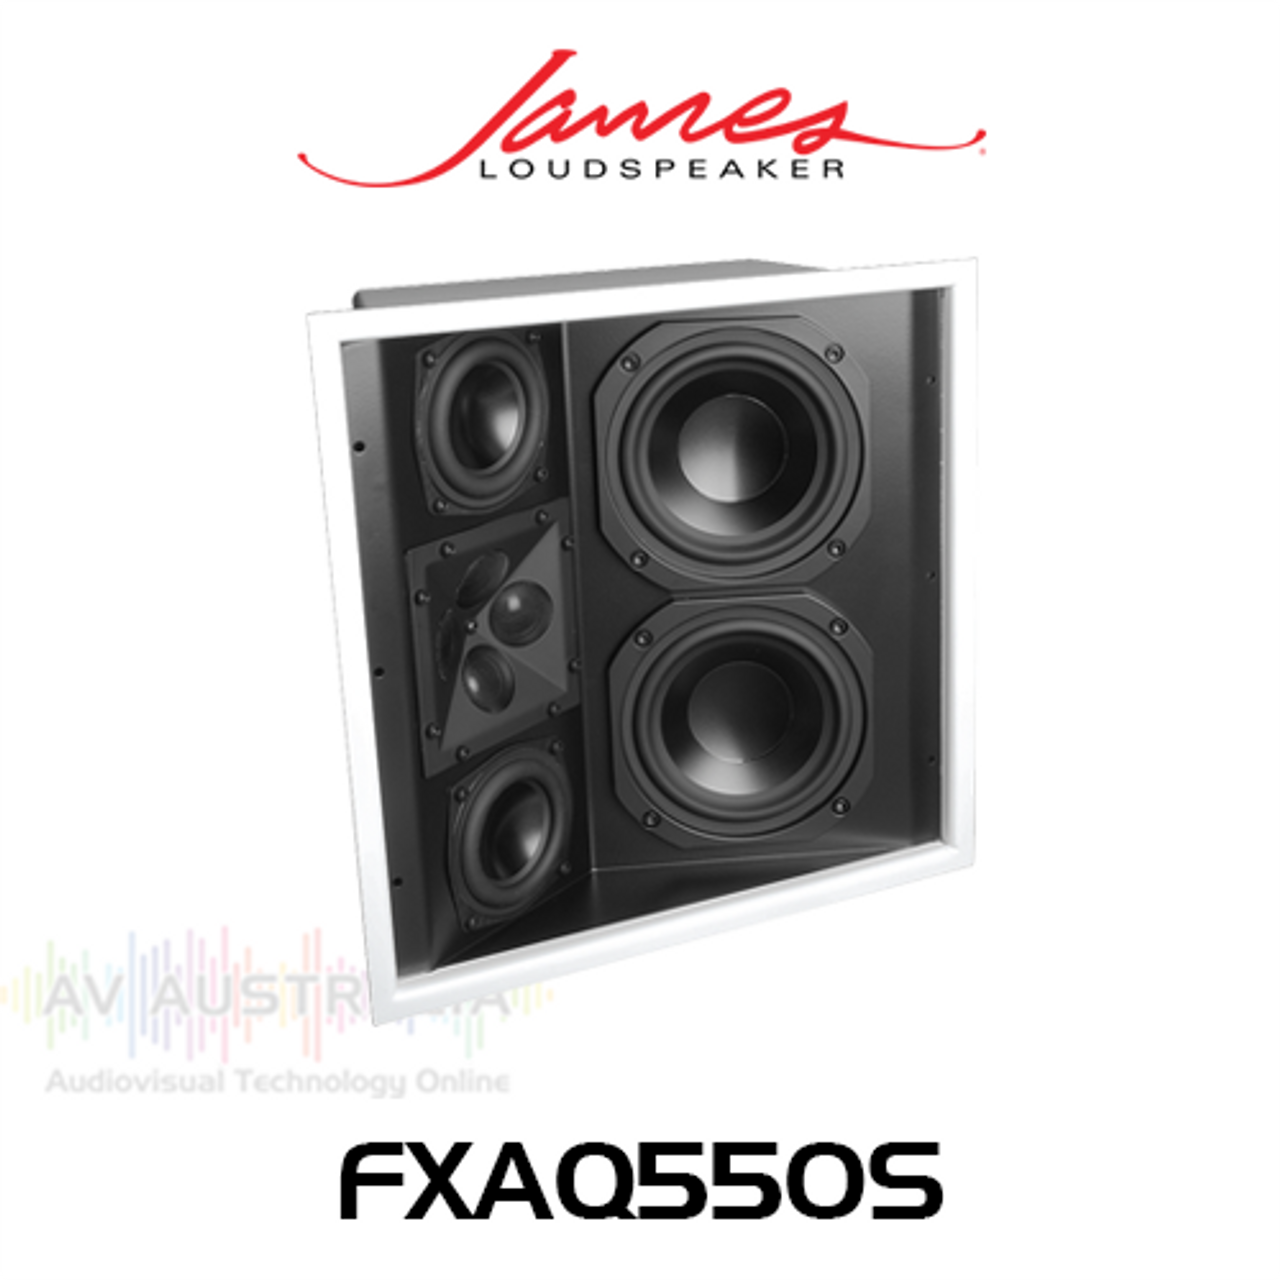 James Loudspeaker FXAQ550S Dual 5.25" 3-Way Angled In-Ceiling/Surround Loudspeaker (Each)